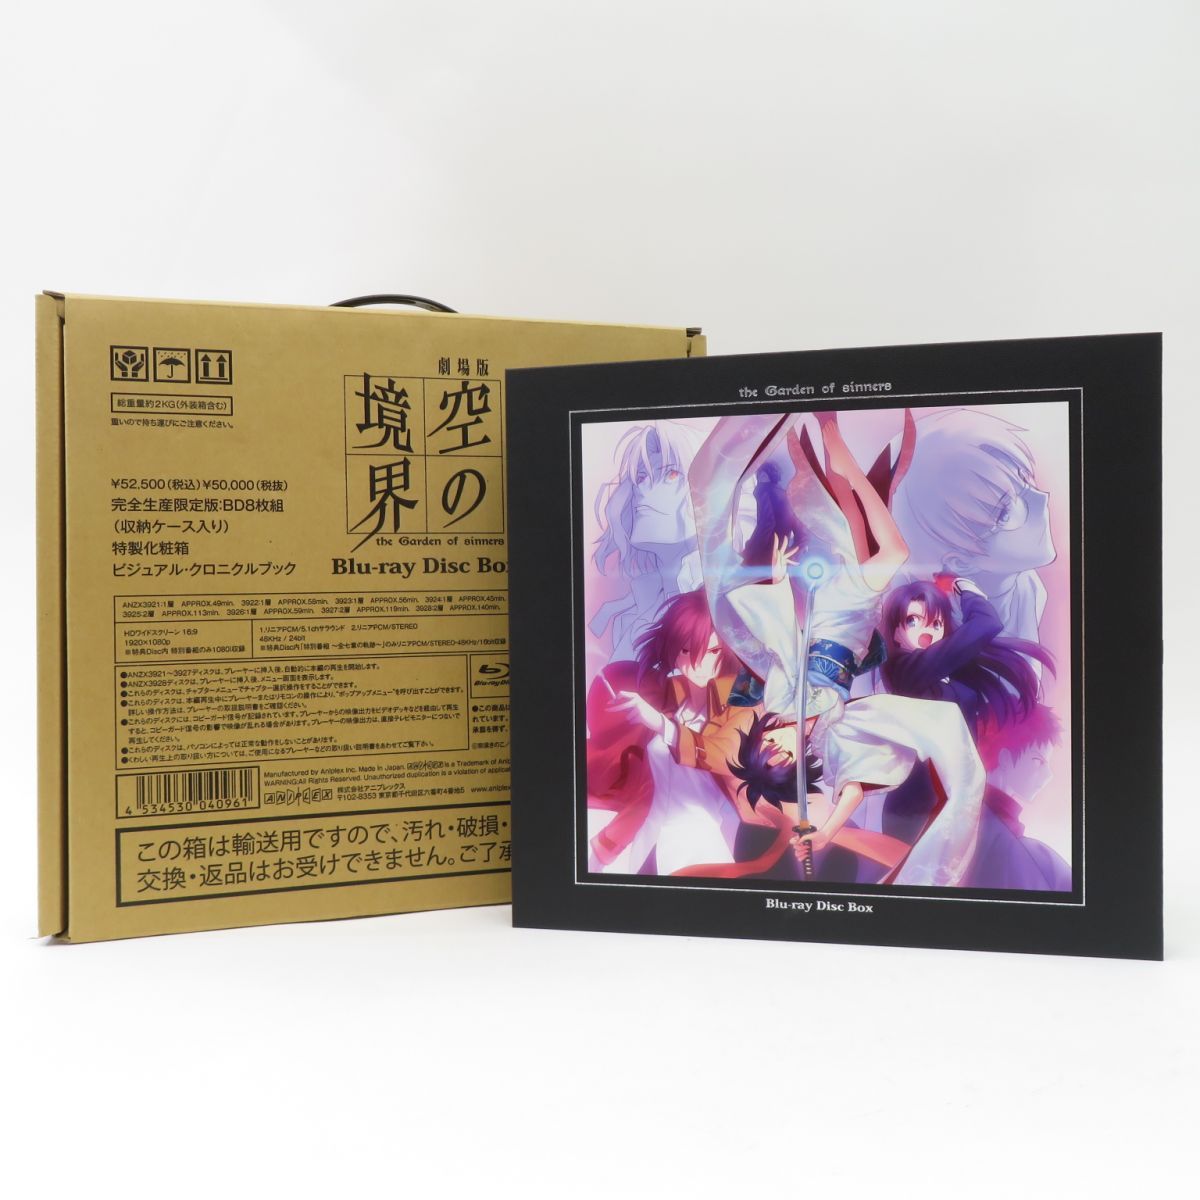 安い劇場版「空の境界」 Blu-ray Disc Box〈完全生産限定・8枚組〉 アニメ